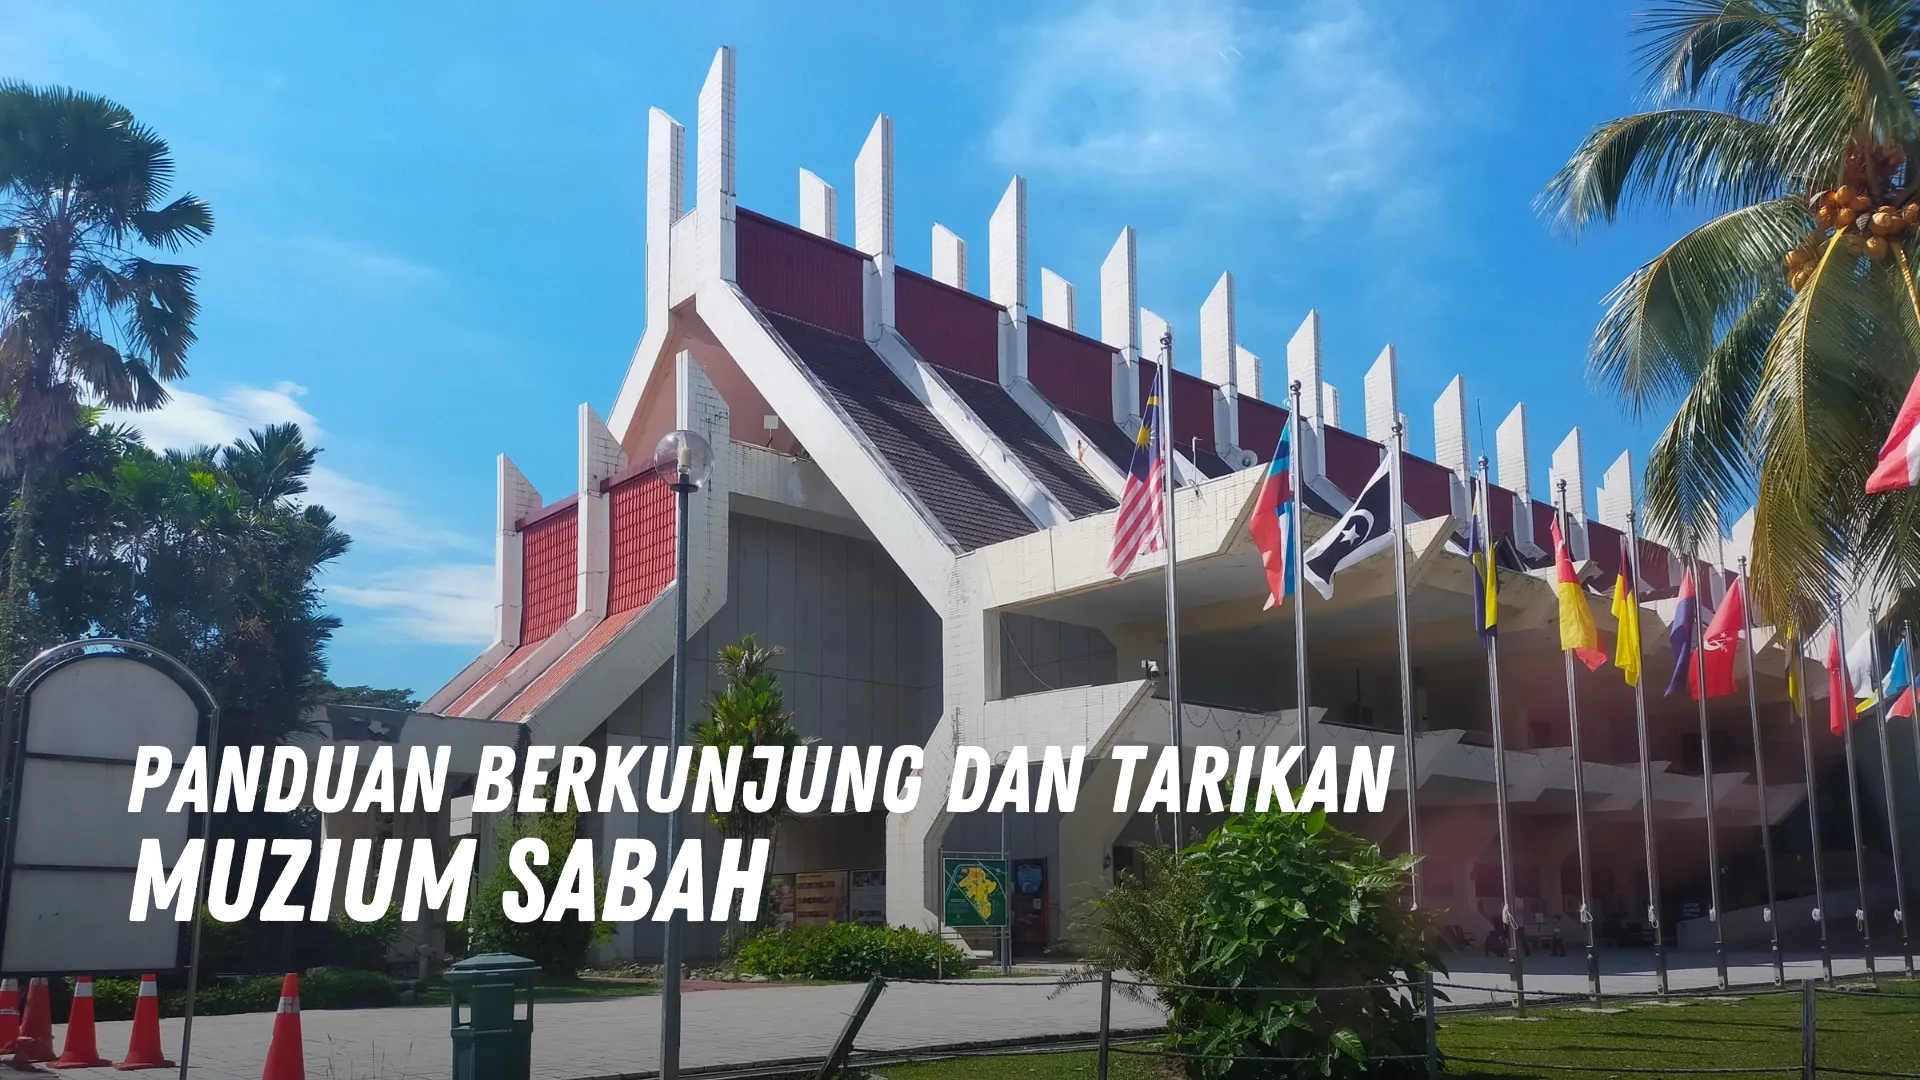 Review Muzium Sabah Malaysia